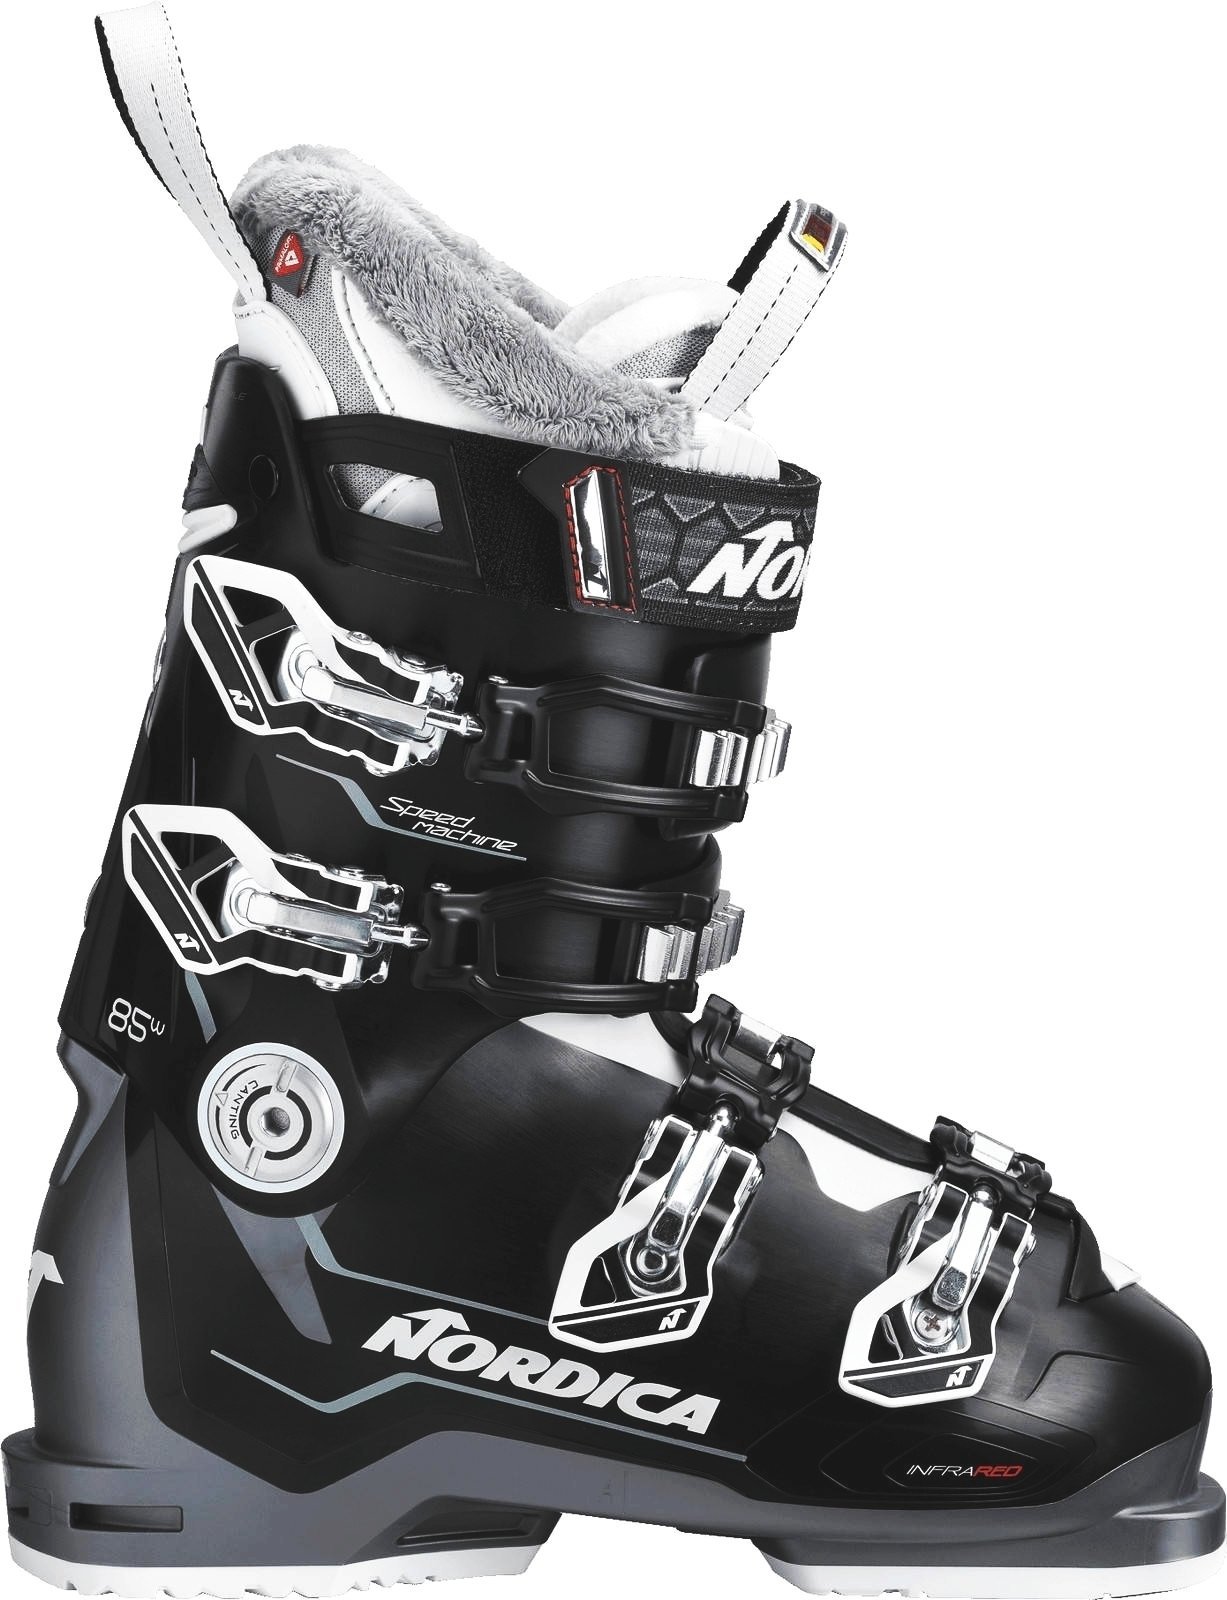 Alpin-Skischuhe Nordica Speedmachine W Black-Anthracite-White 240 Alpin-Skischuhe